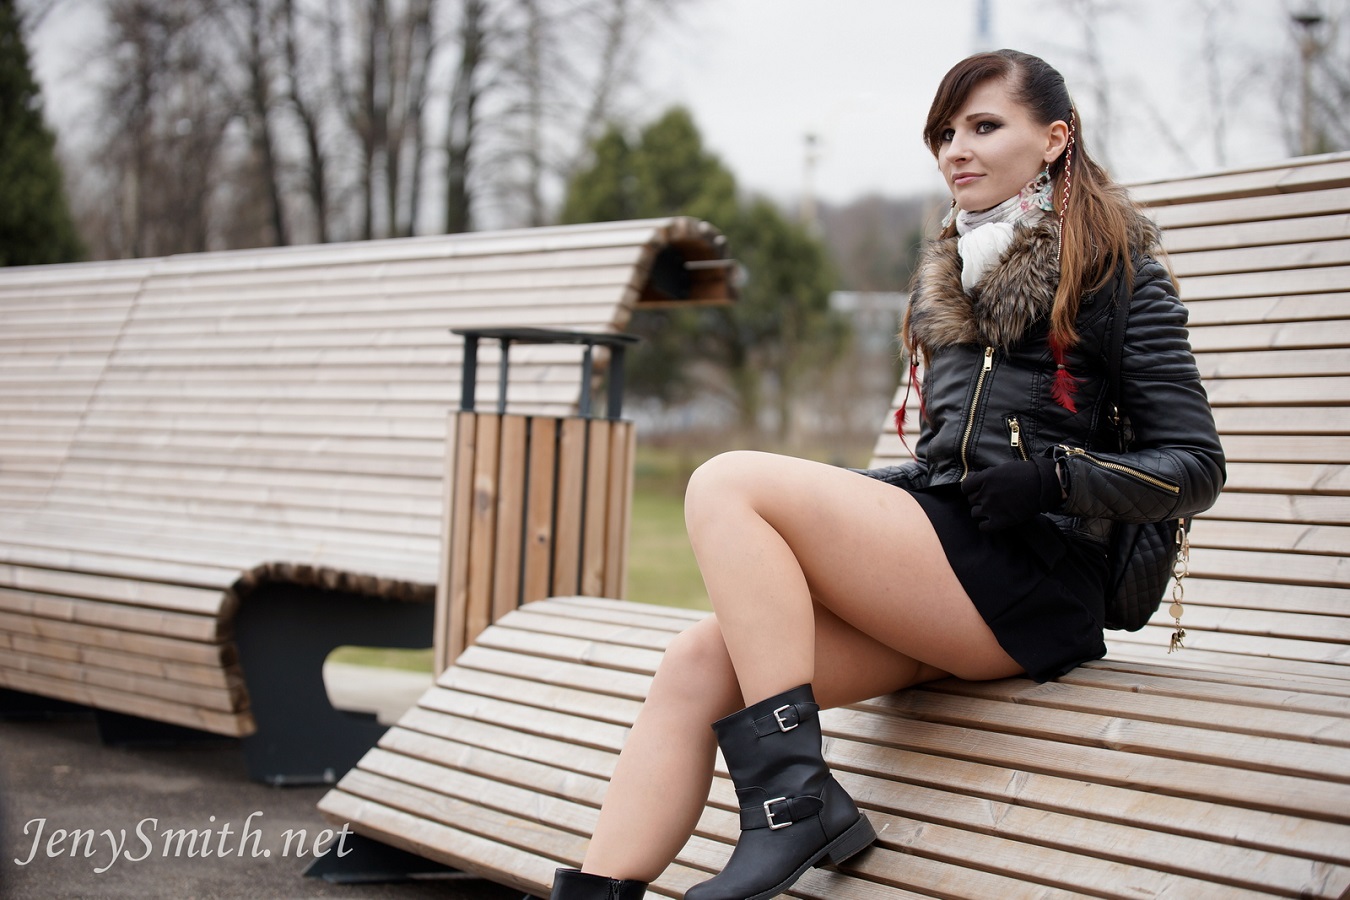 People 1350x900 Jeny Smith model brunette public jacket women black jackets fur zipper on bench black boots outdoors